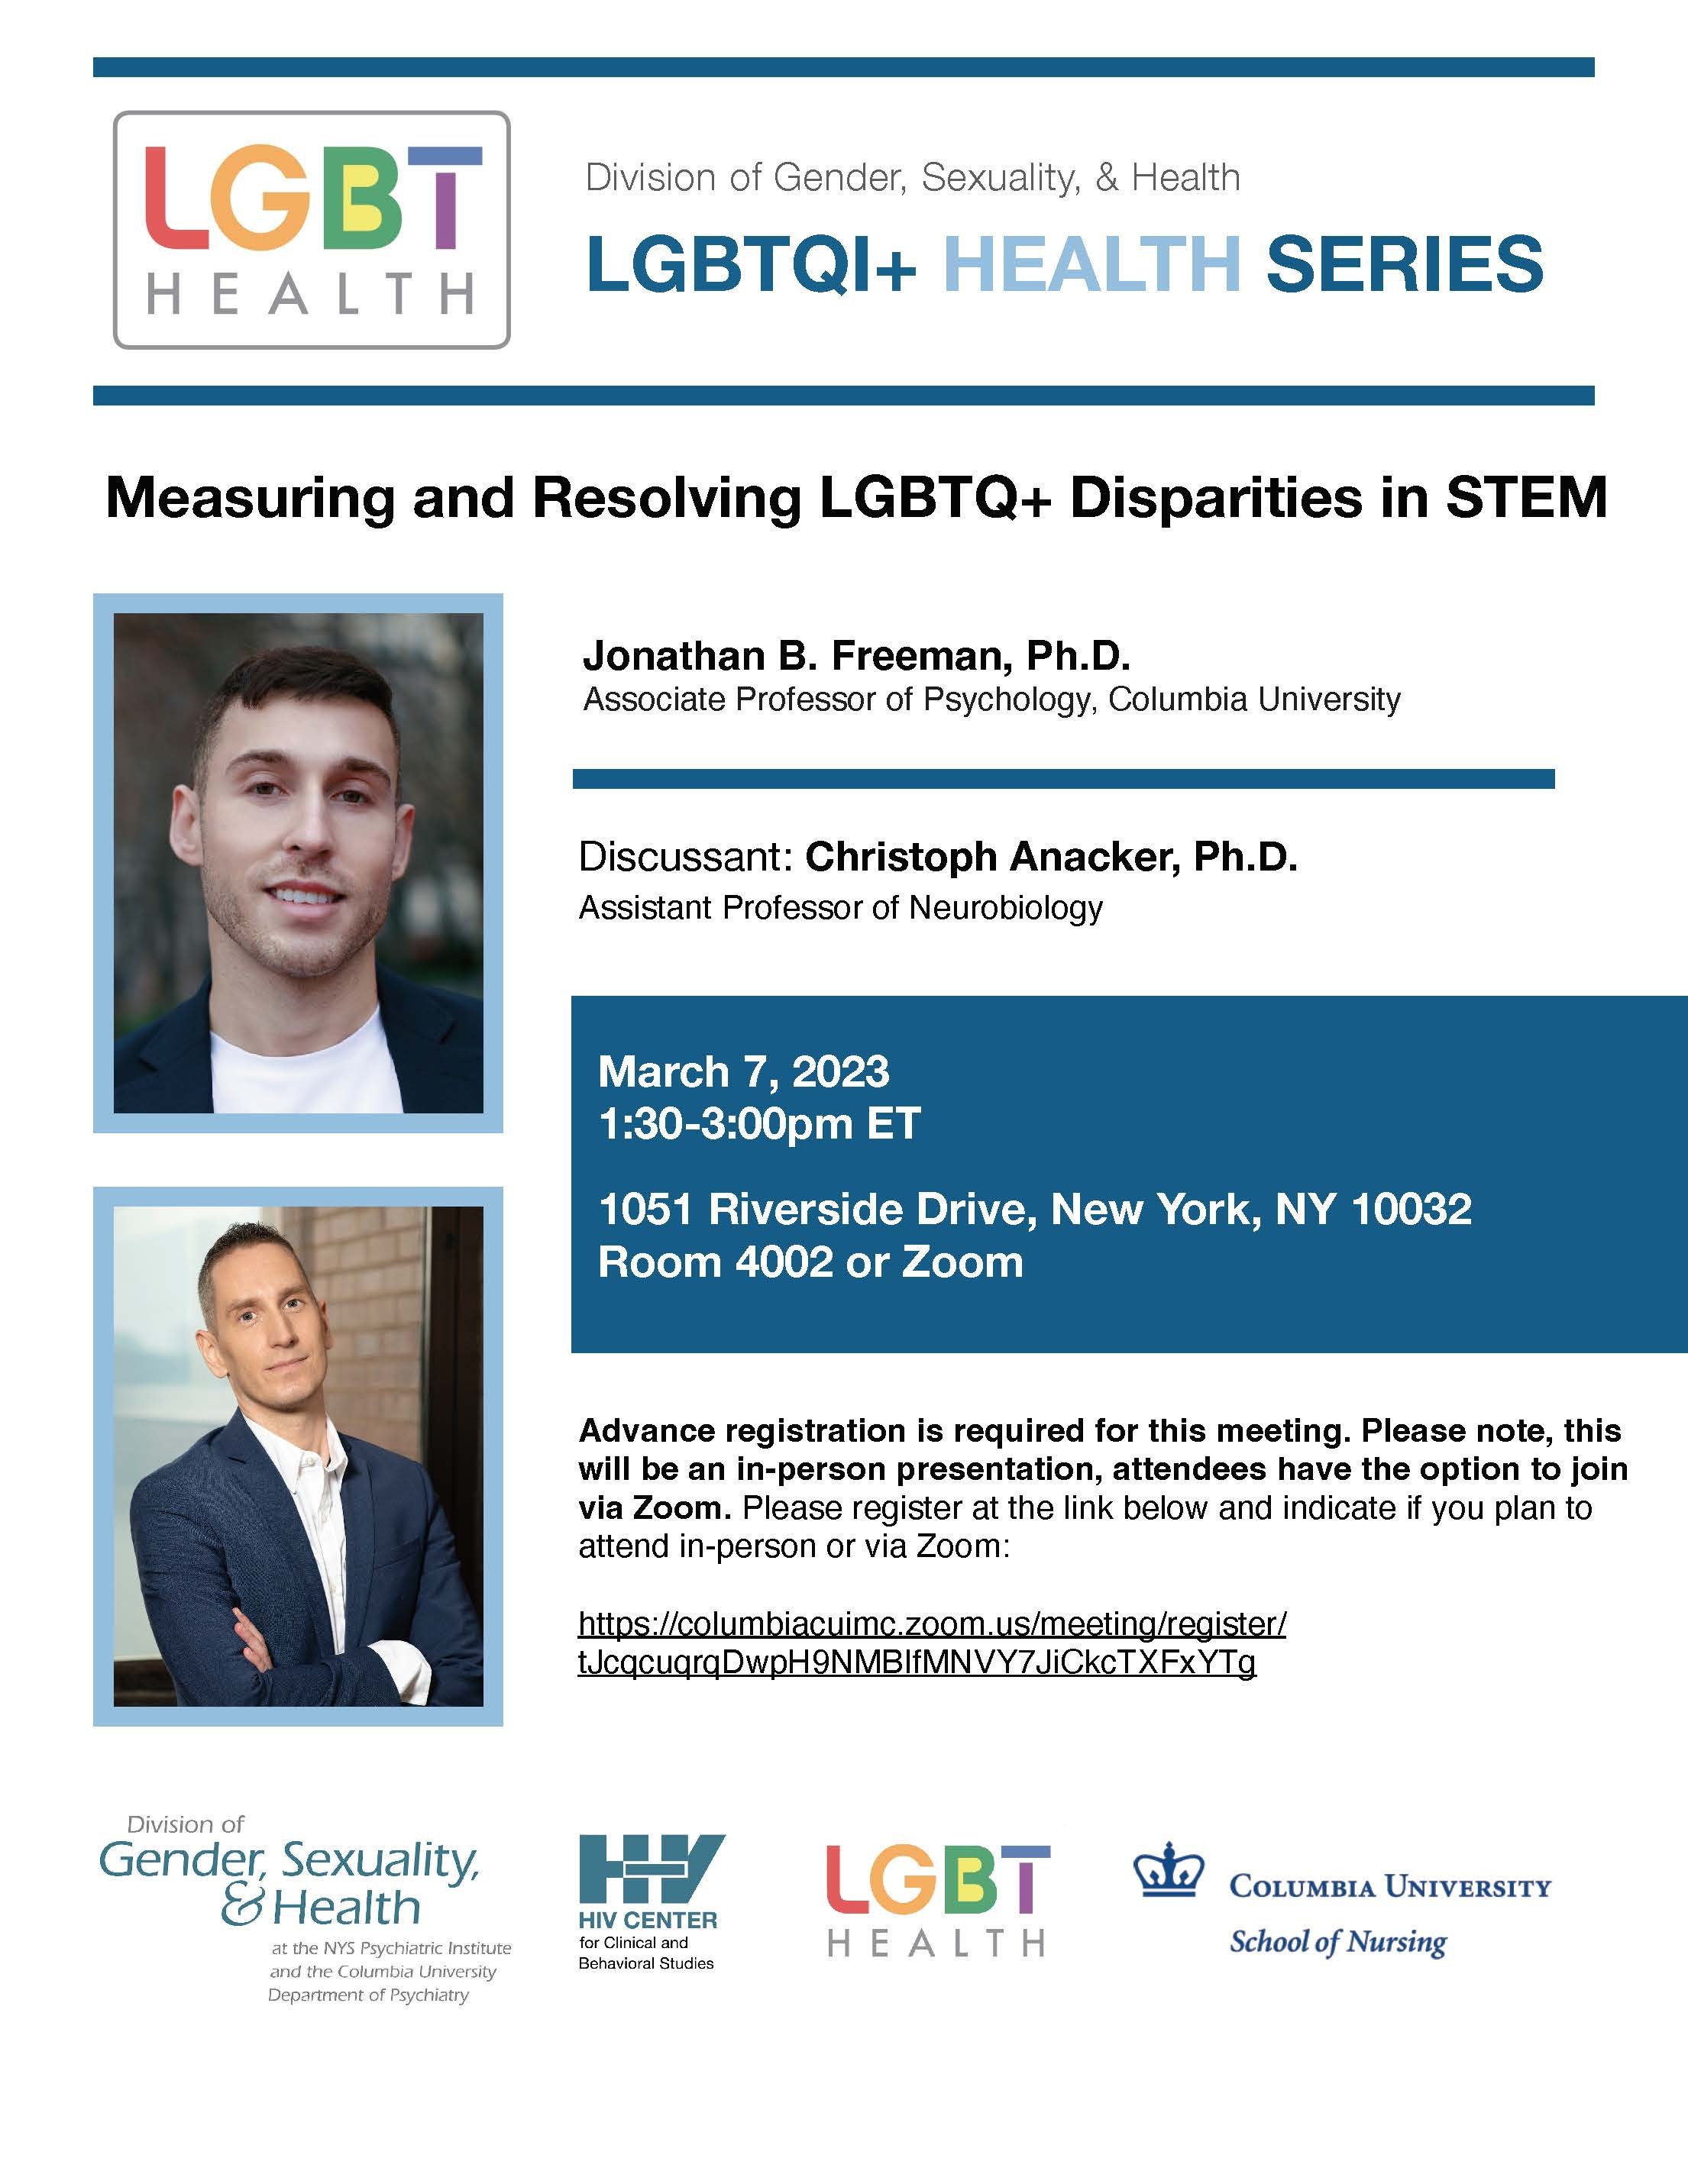 Mar 7 2023 LGBTQI+ Health.jpg